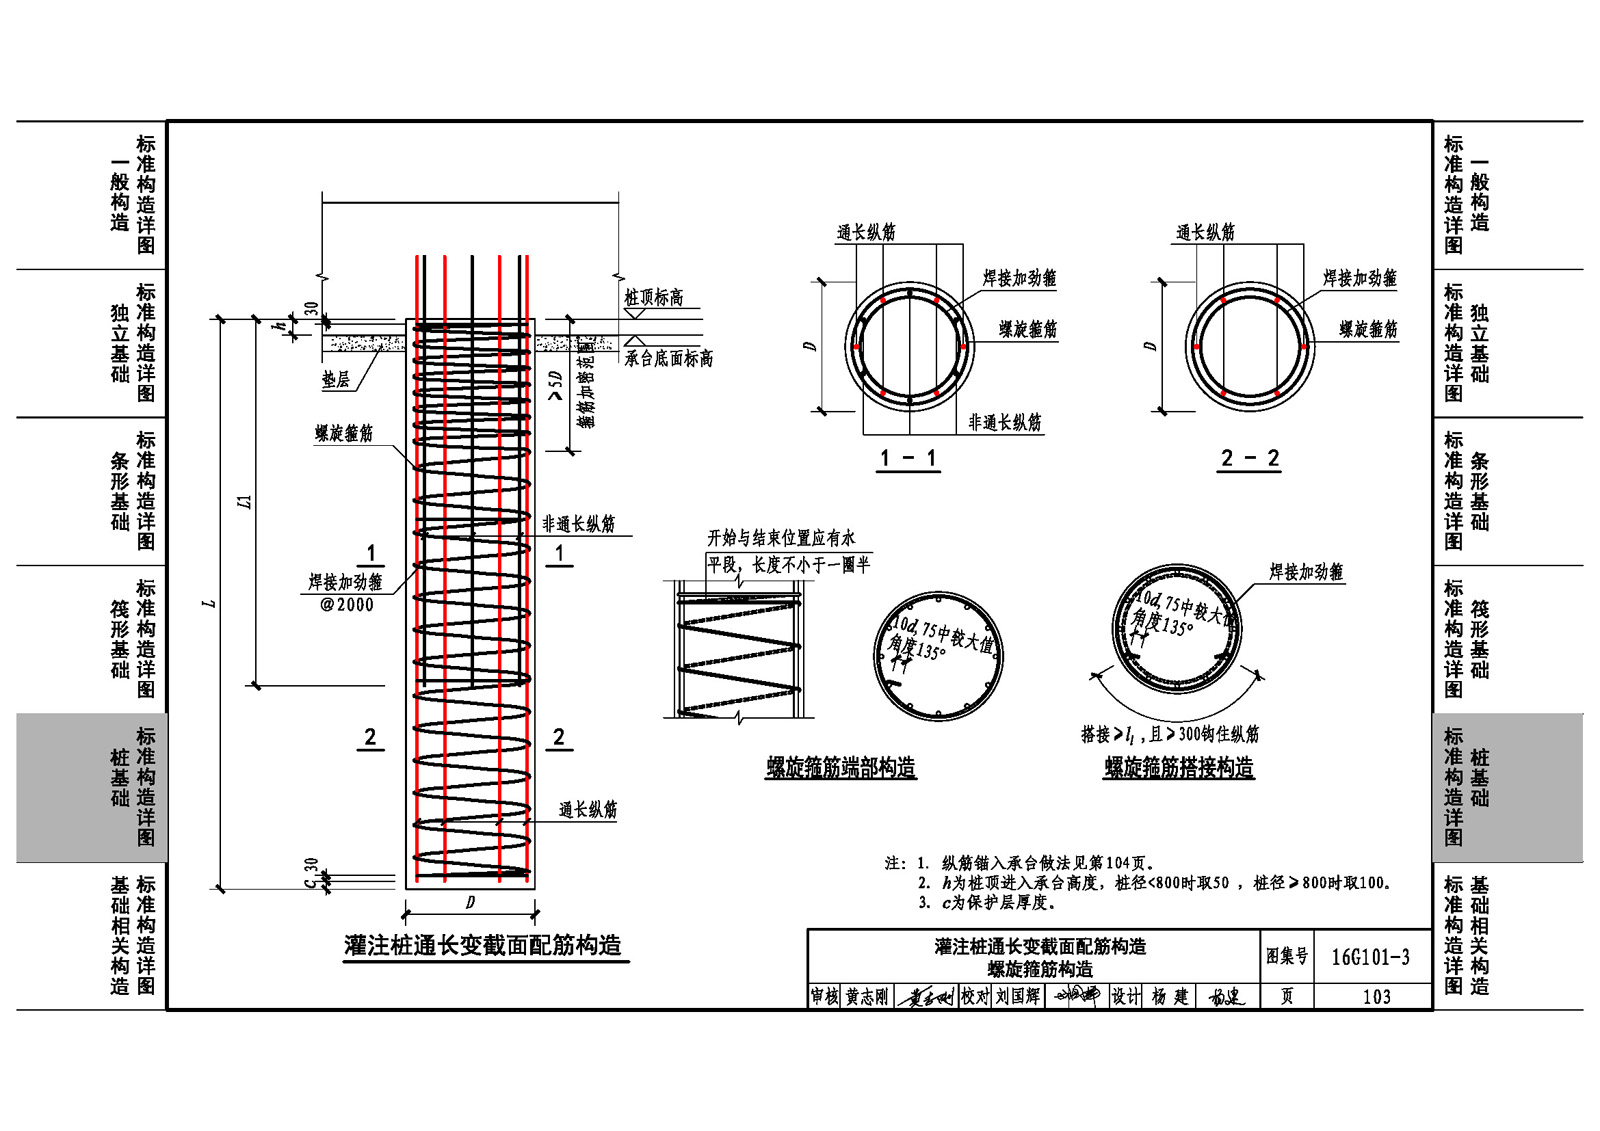 建筑工程施工图16G101-1、2、3图集全套大合集+CAD电子版识图，限时分享3天 - 知乎